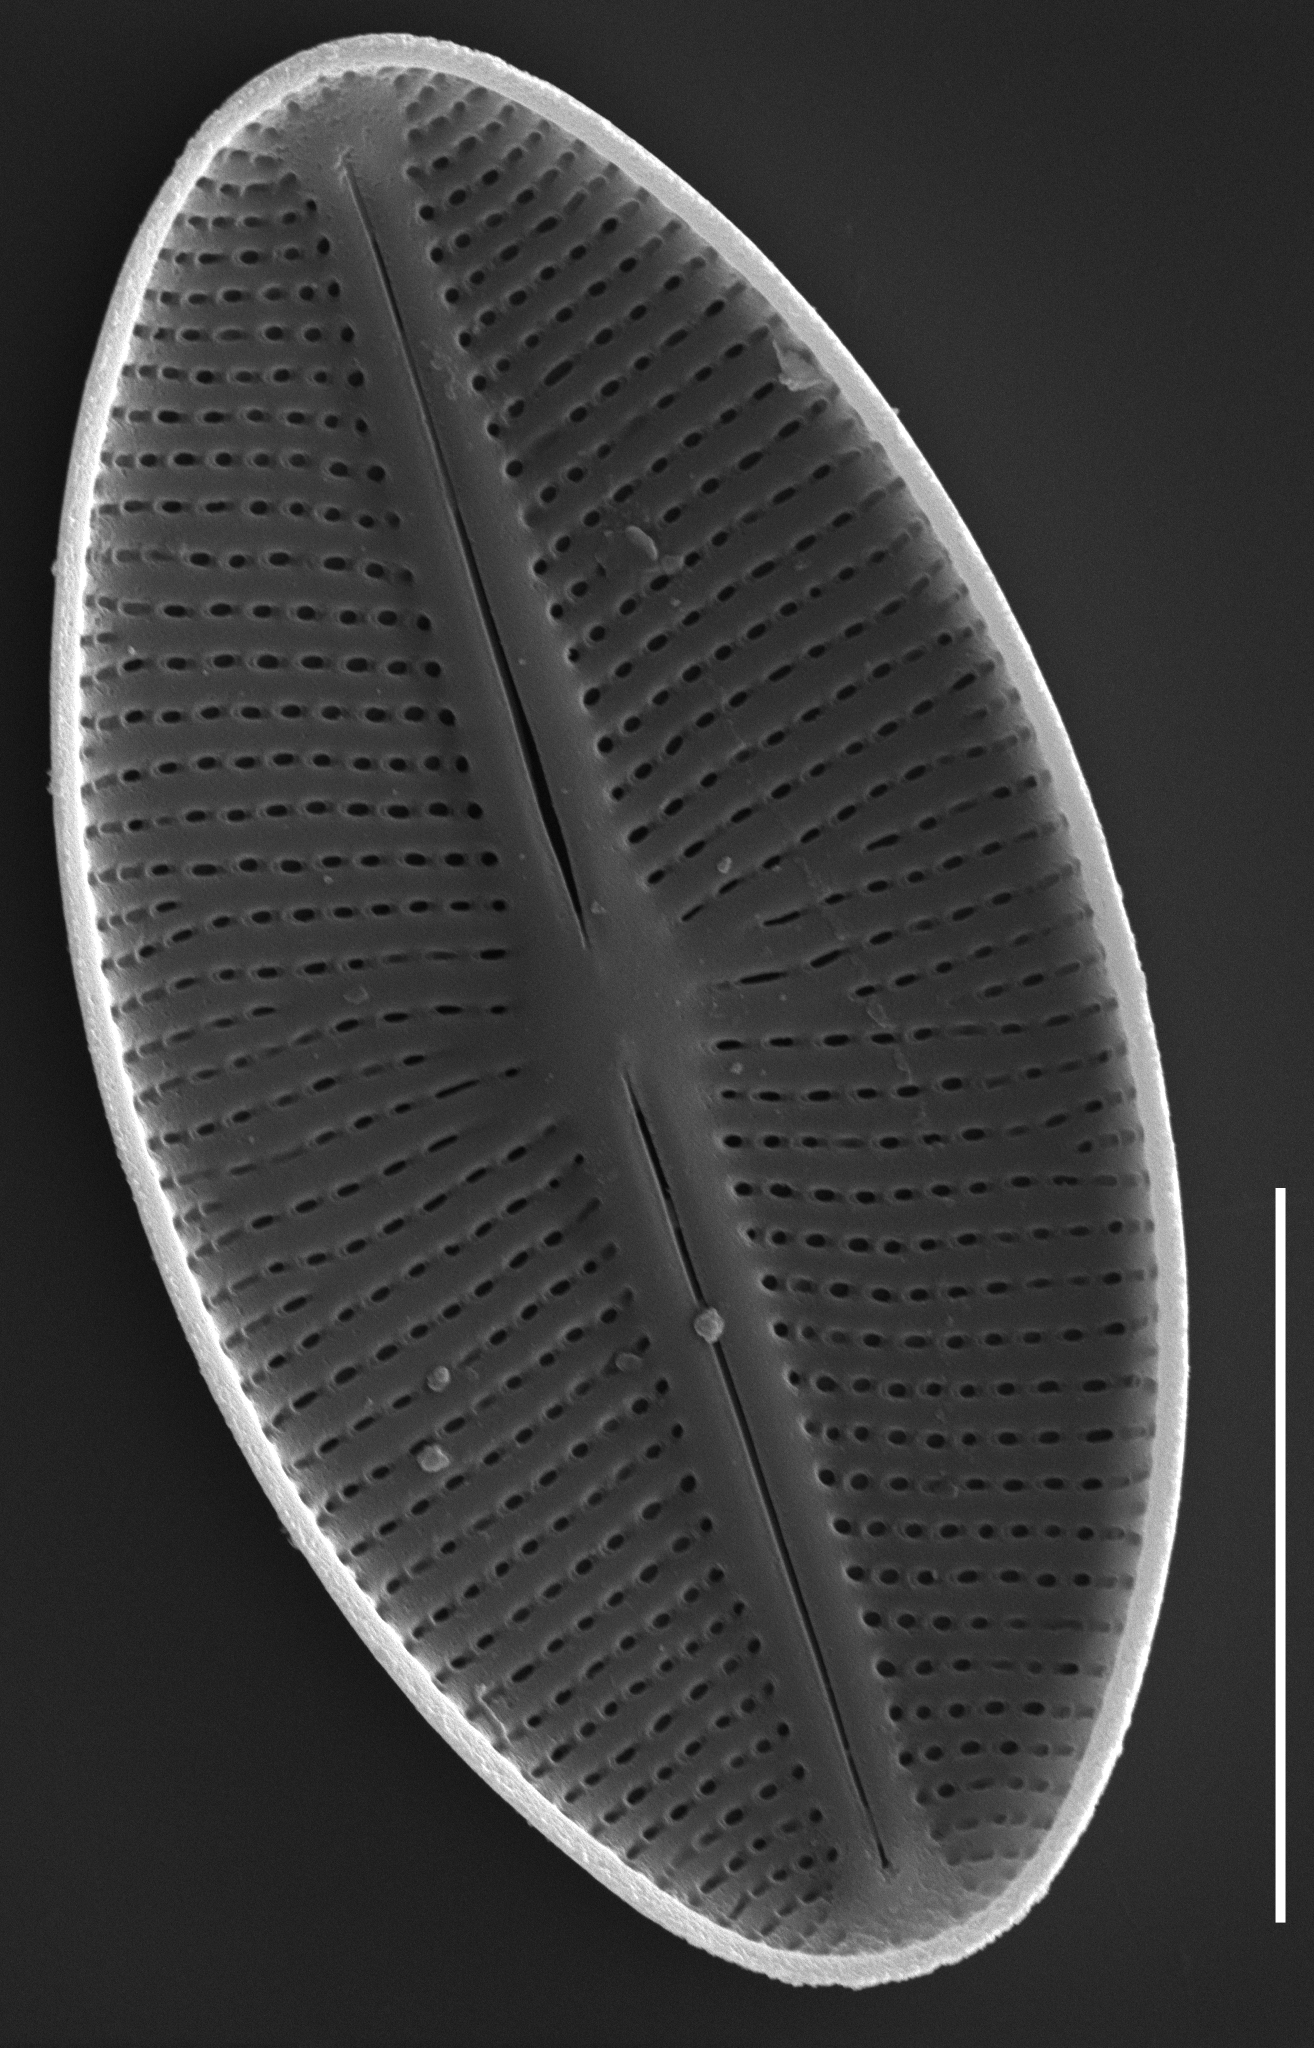 Cavinula cocconeiformis SEM1